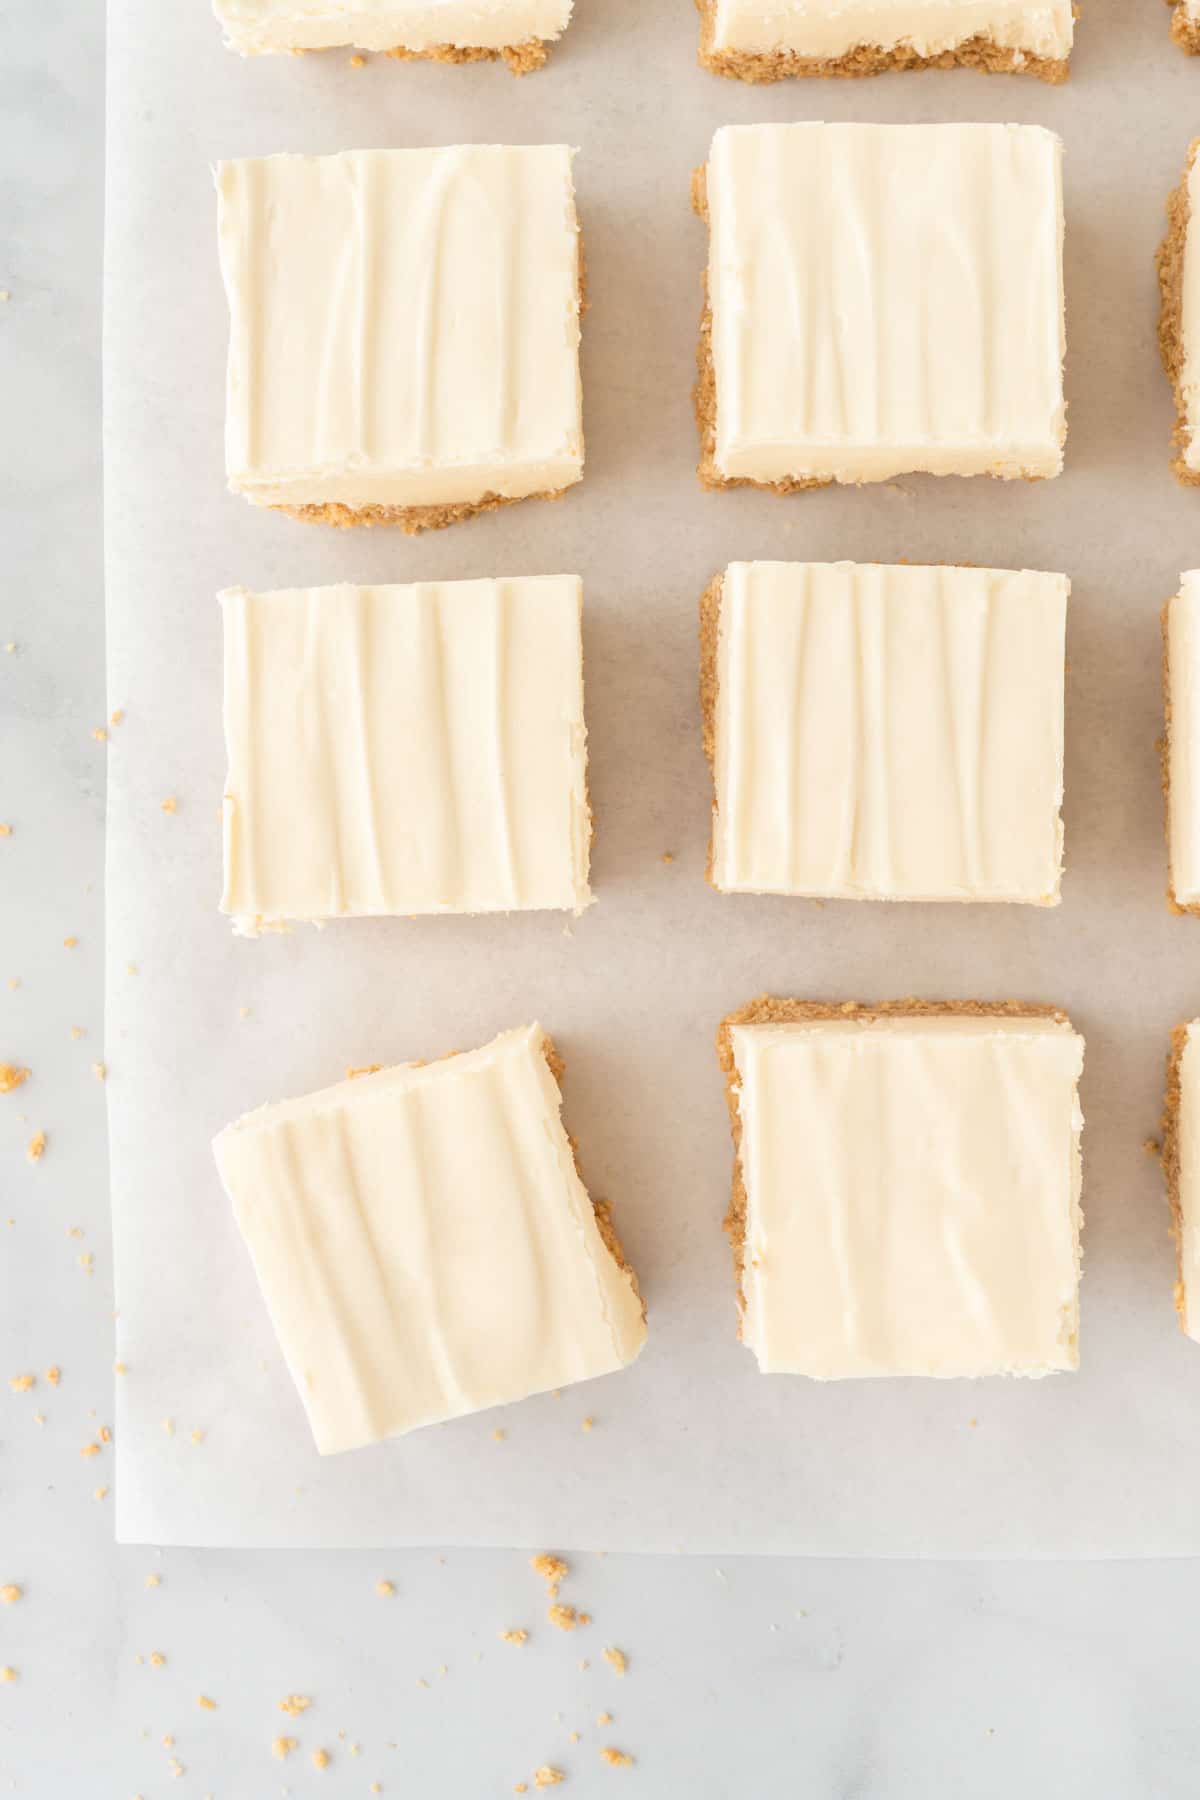 no bake cheesecake bars cut into squares